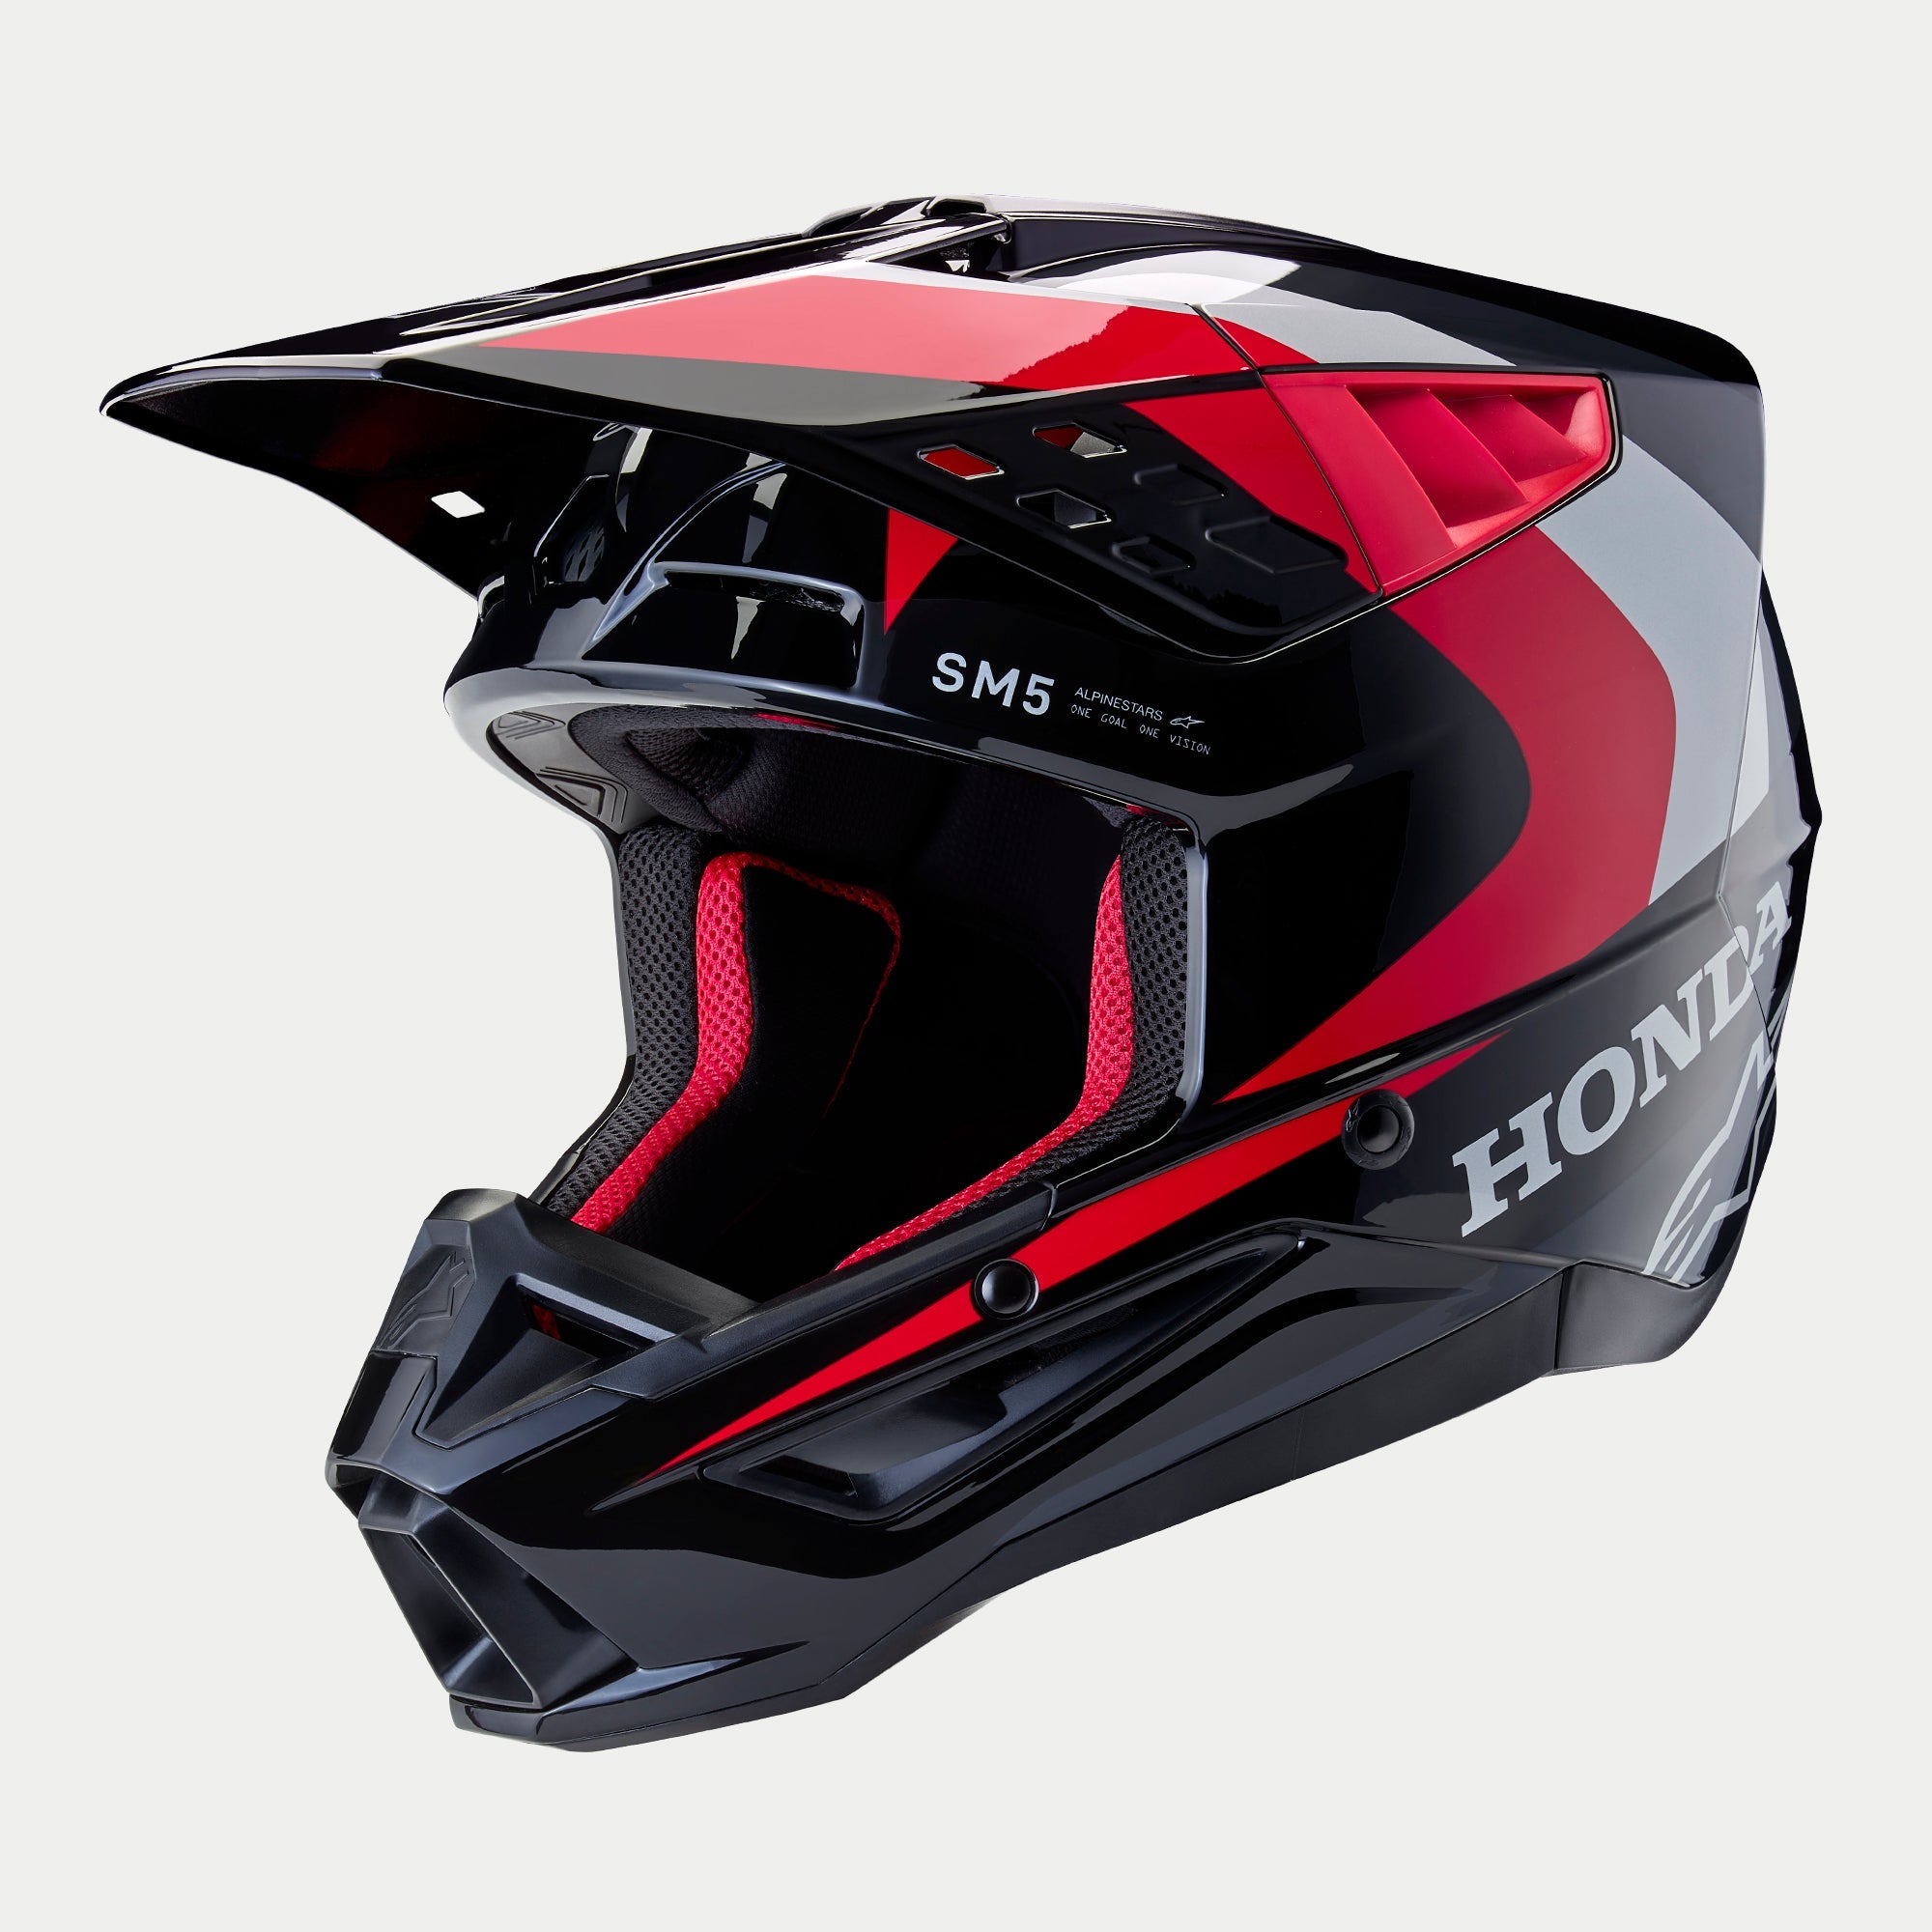 Honda SM5 Helmet - Alpinestars